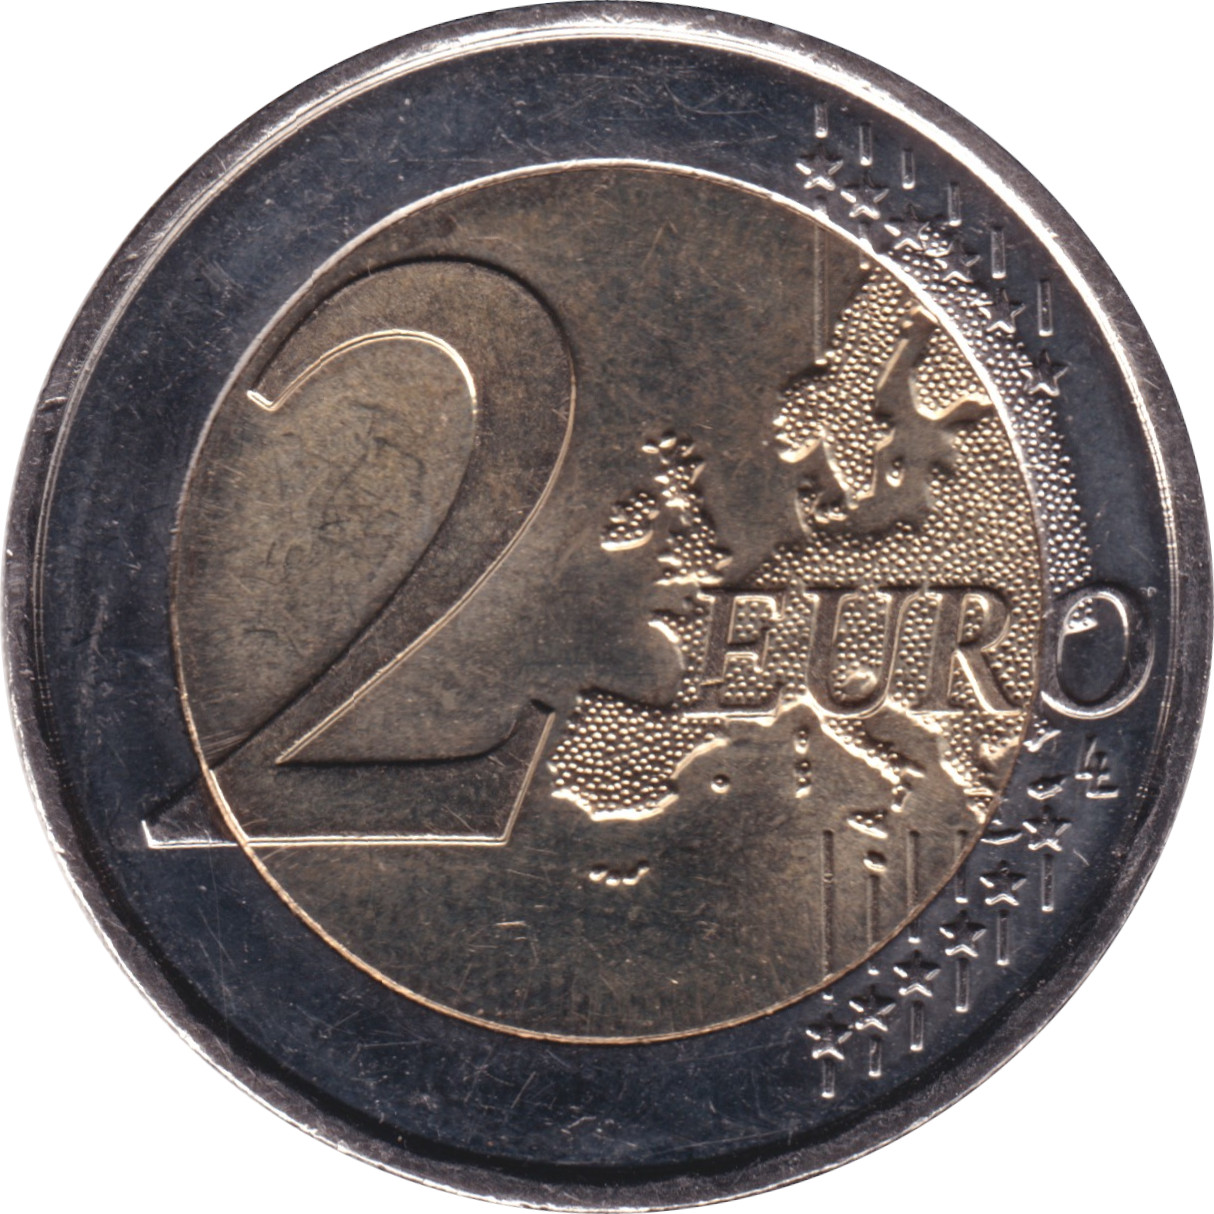 2 euro - Hexagone